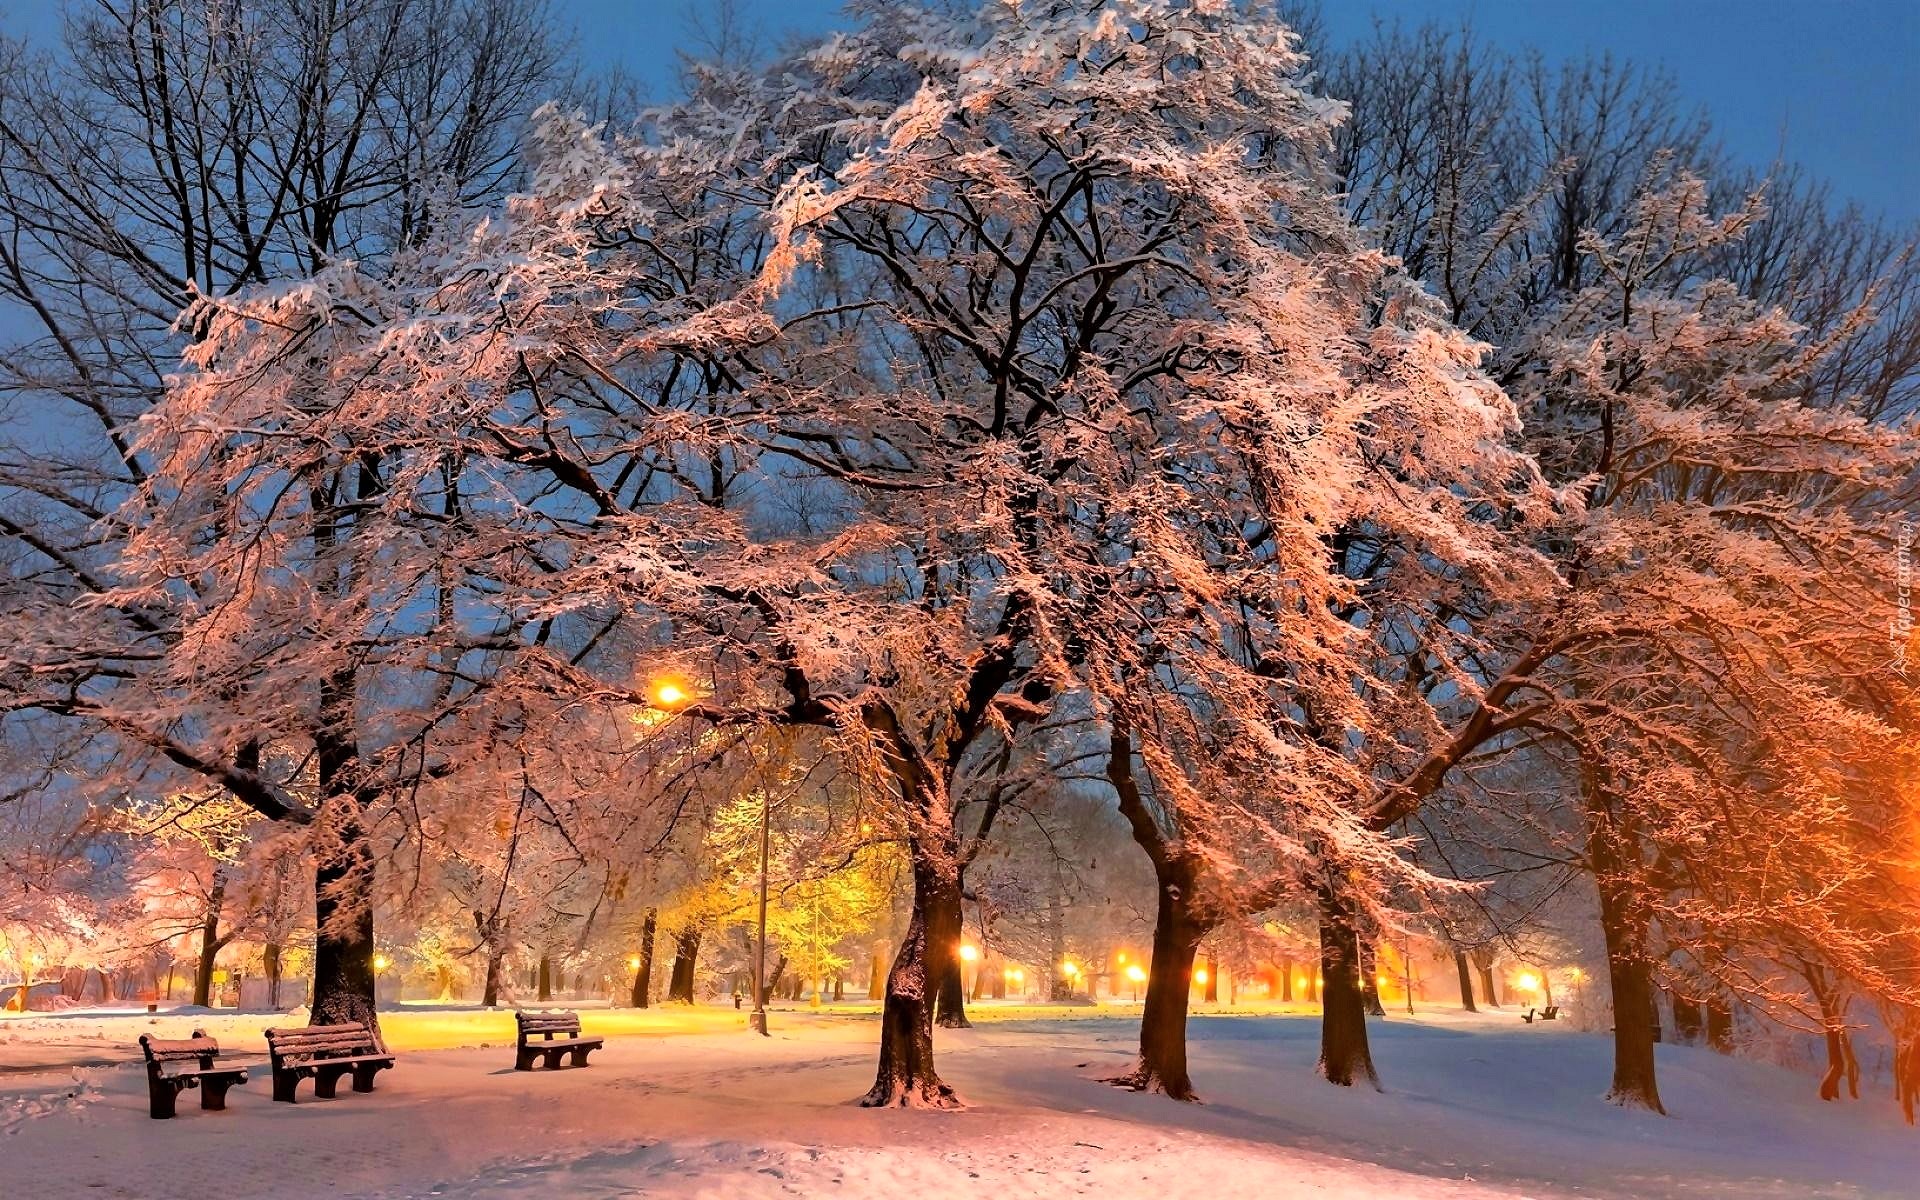 Скачать картинку Зима, Снег, Свет, Парк, Дерево, Сумерки, Скамейка, Фотографии в телефон бесплатно.